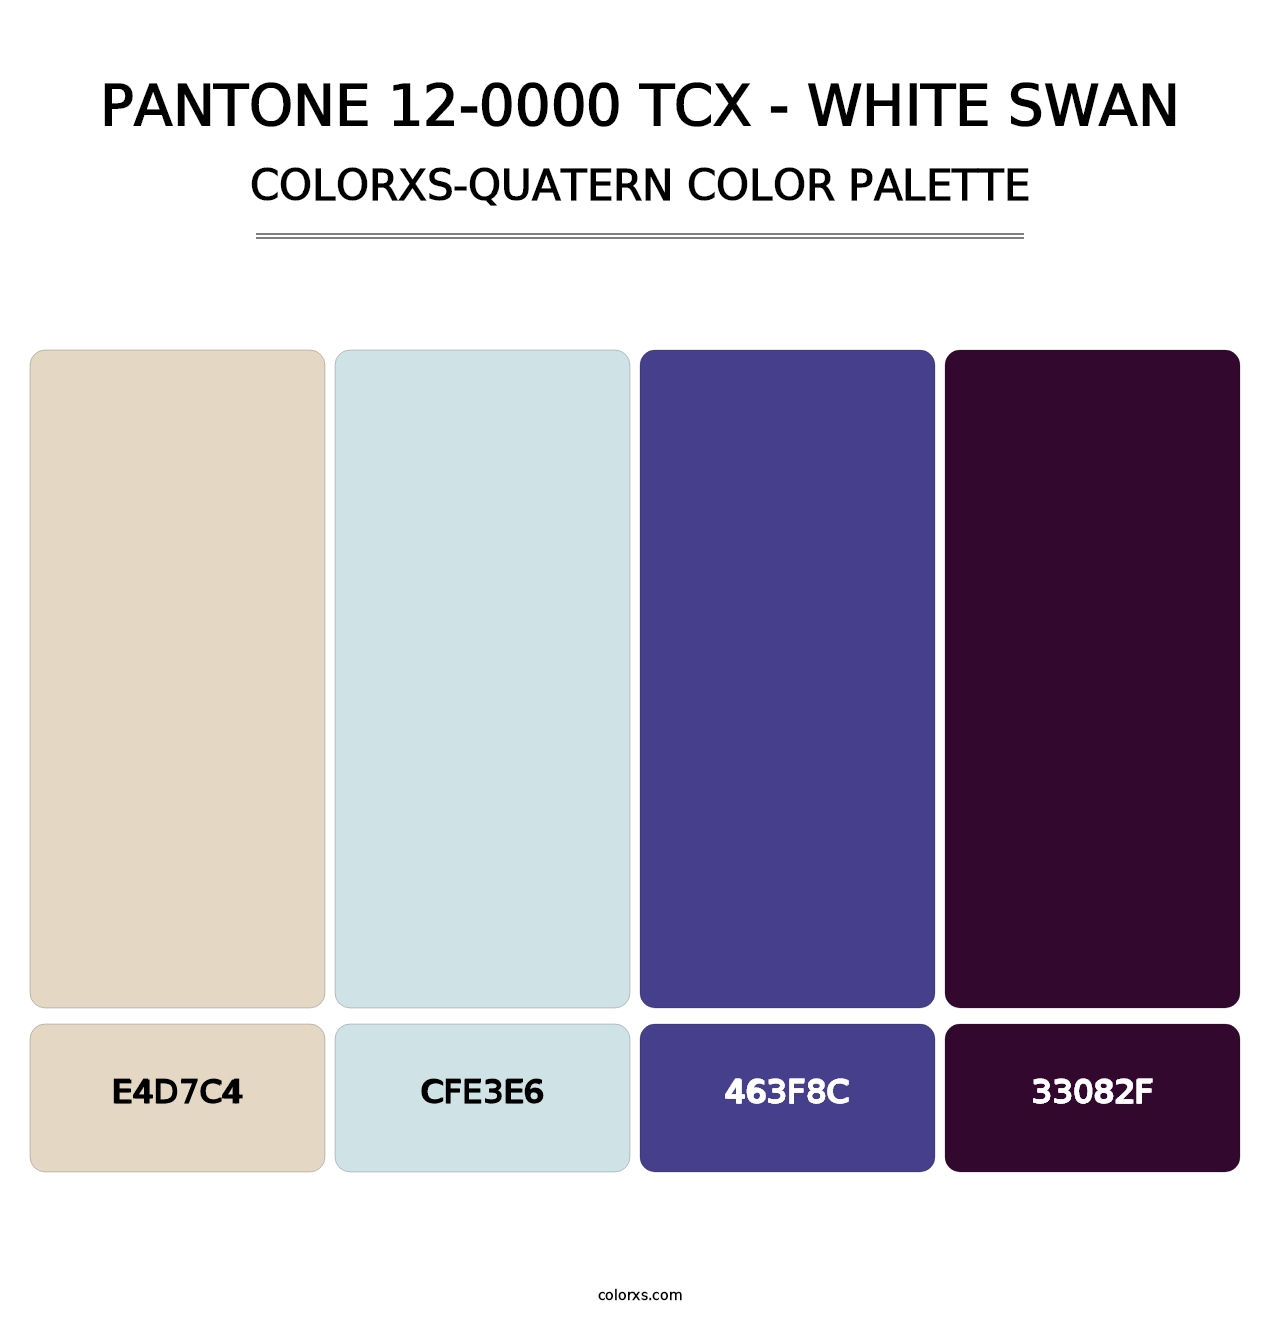 PANTONE 12-0000 TCX - White Swan - Colorxs Quatern Palette